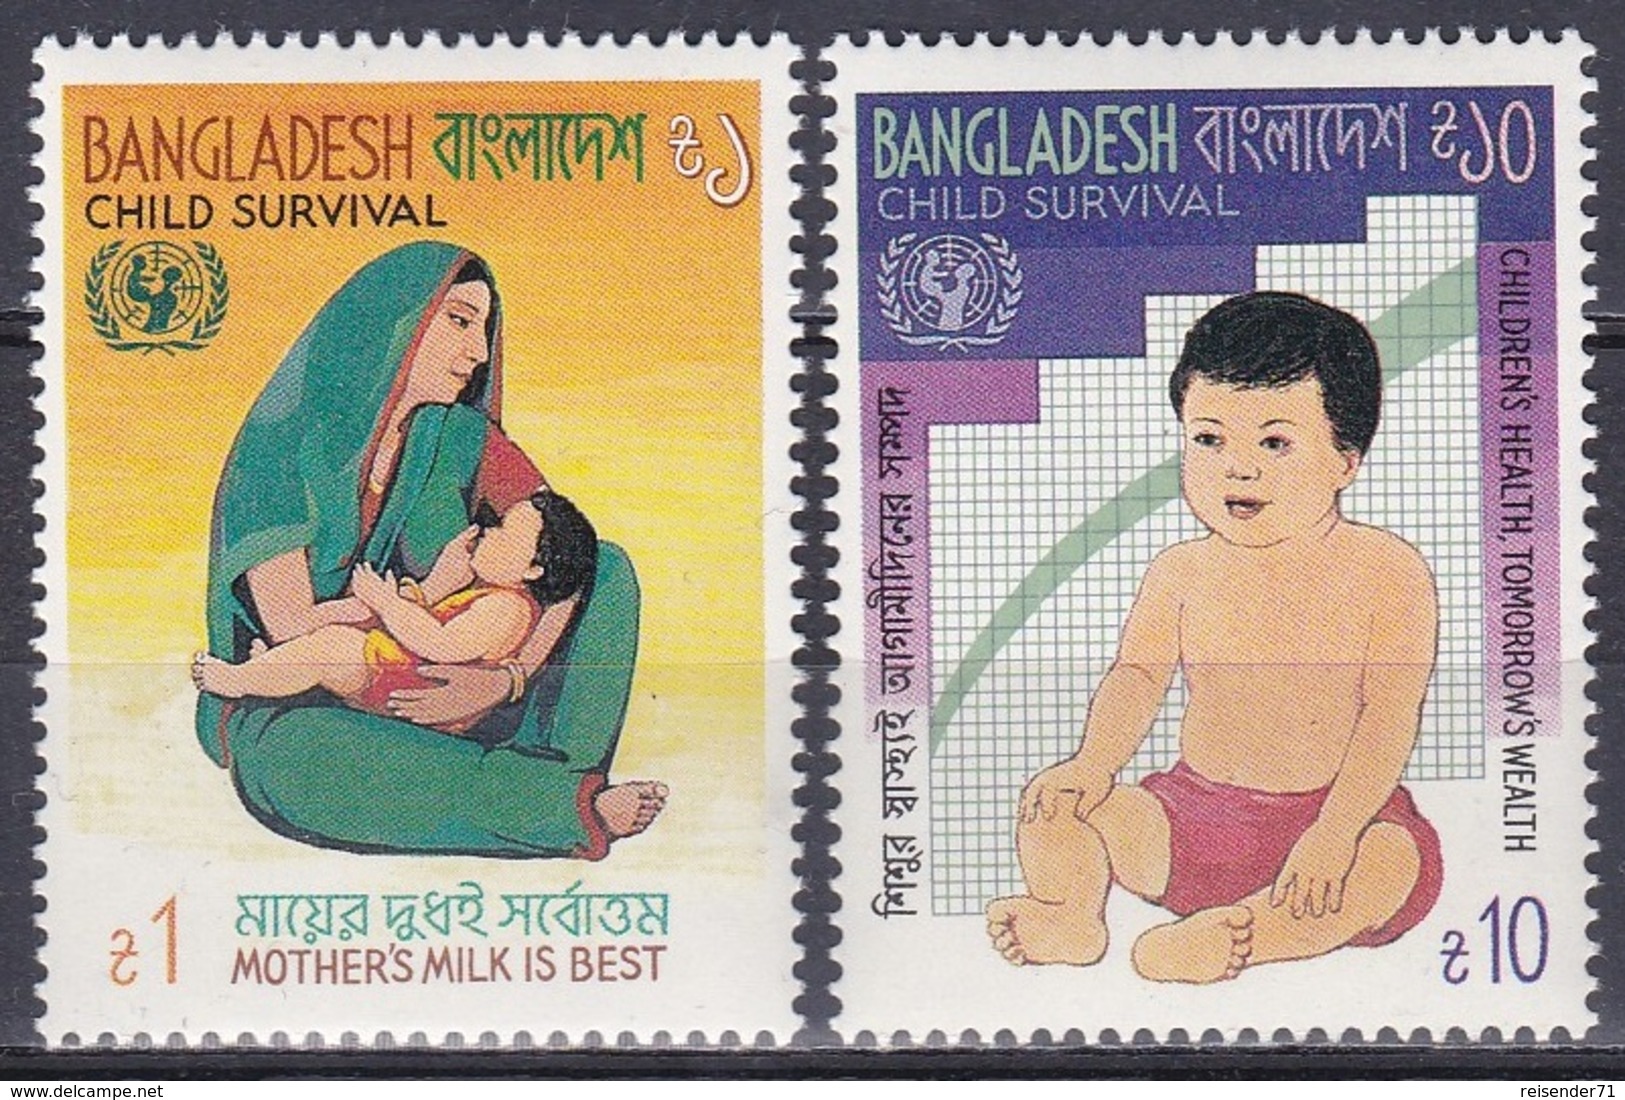 Bangladesch Bangladesh 1985 Organisationen UNO ONU Gesundheit Health Kindersterblichkeit Child Mortality, Mi. 225-6 ** - Bangladesch